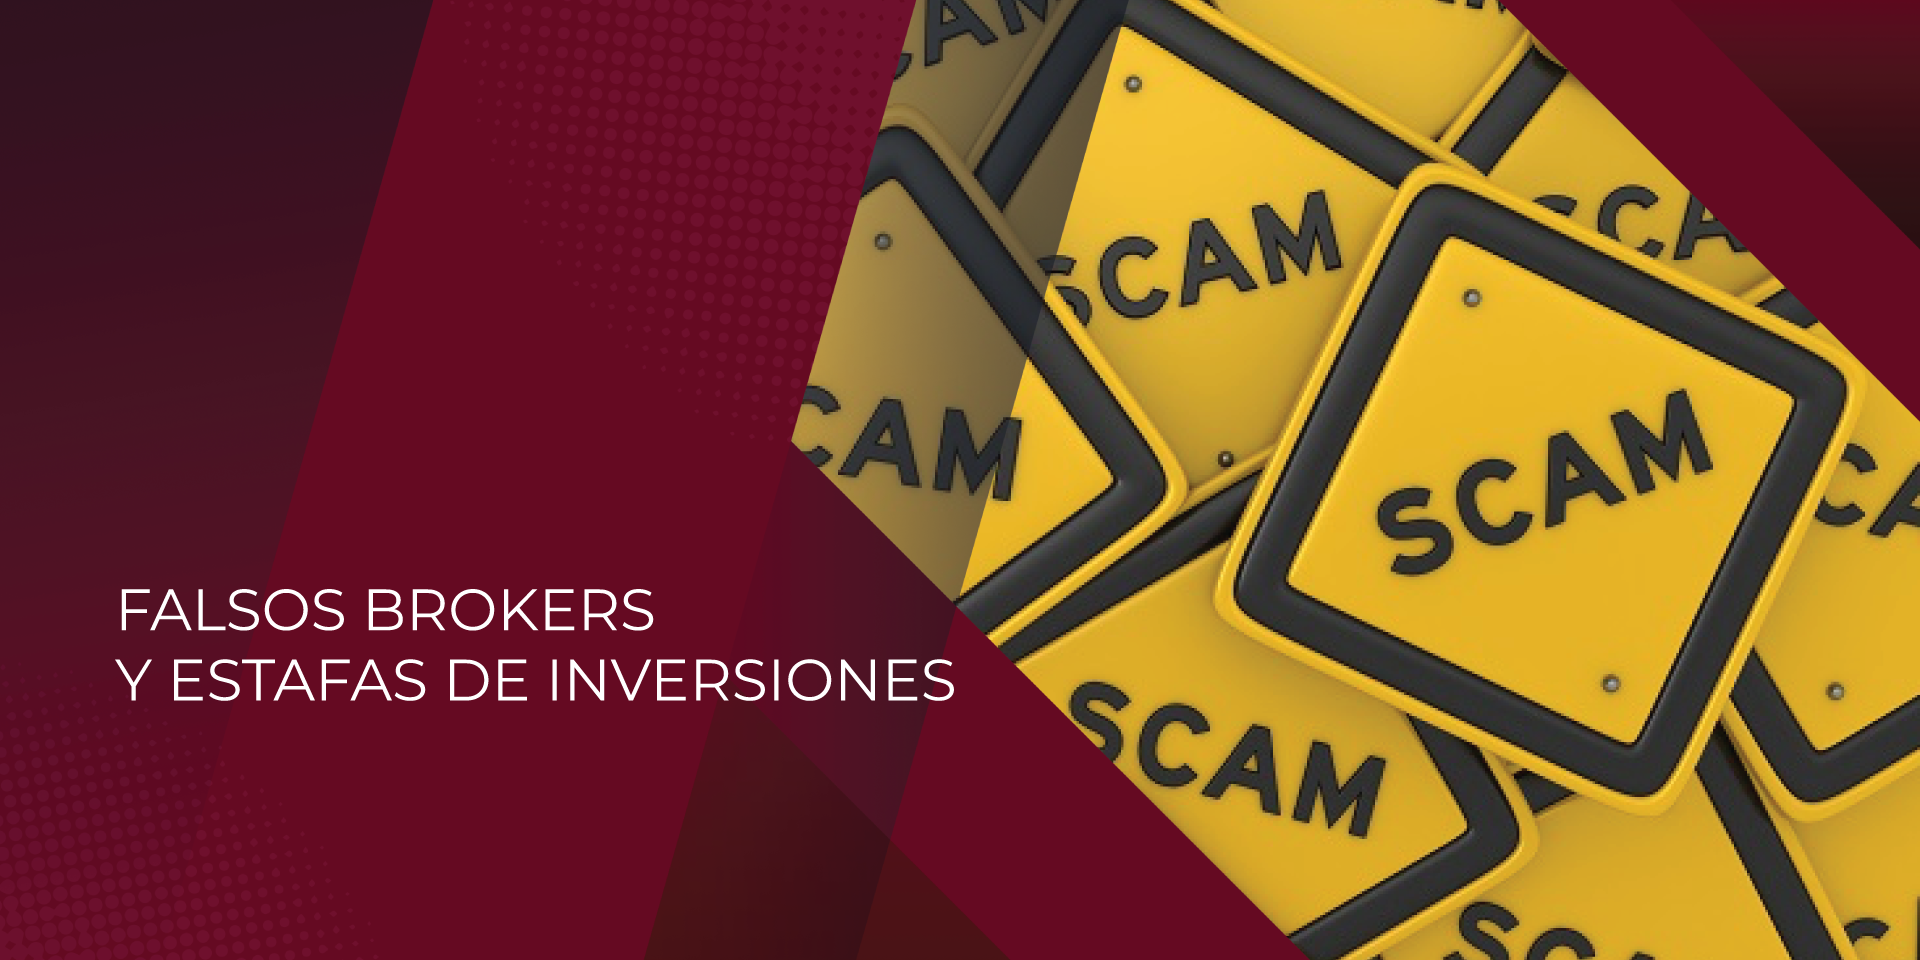 FALSOS BROKERS Y ESTAFAS DE INVERSIONES